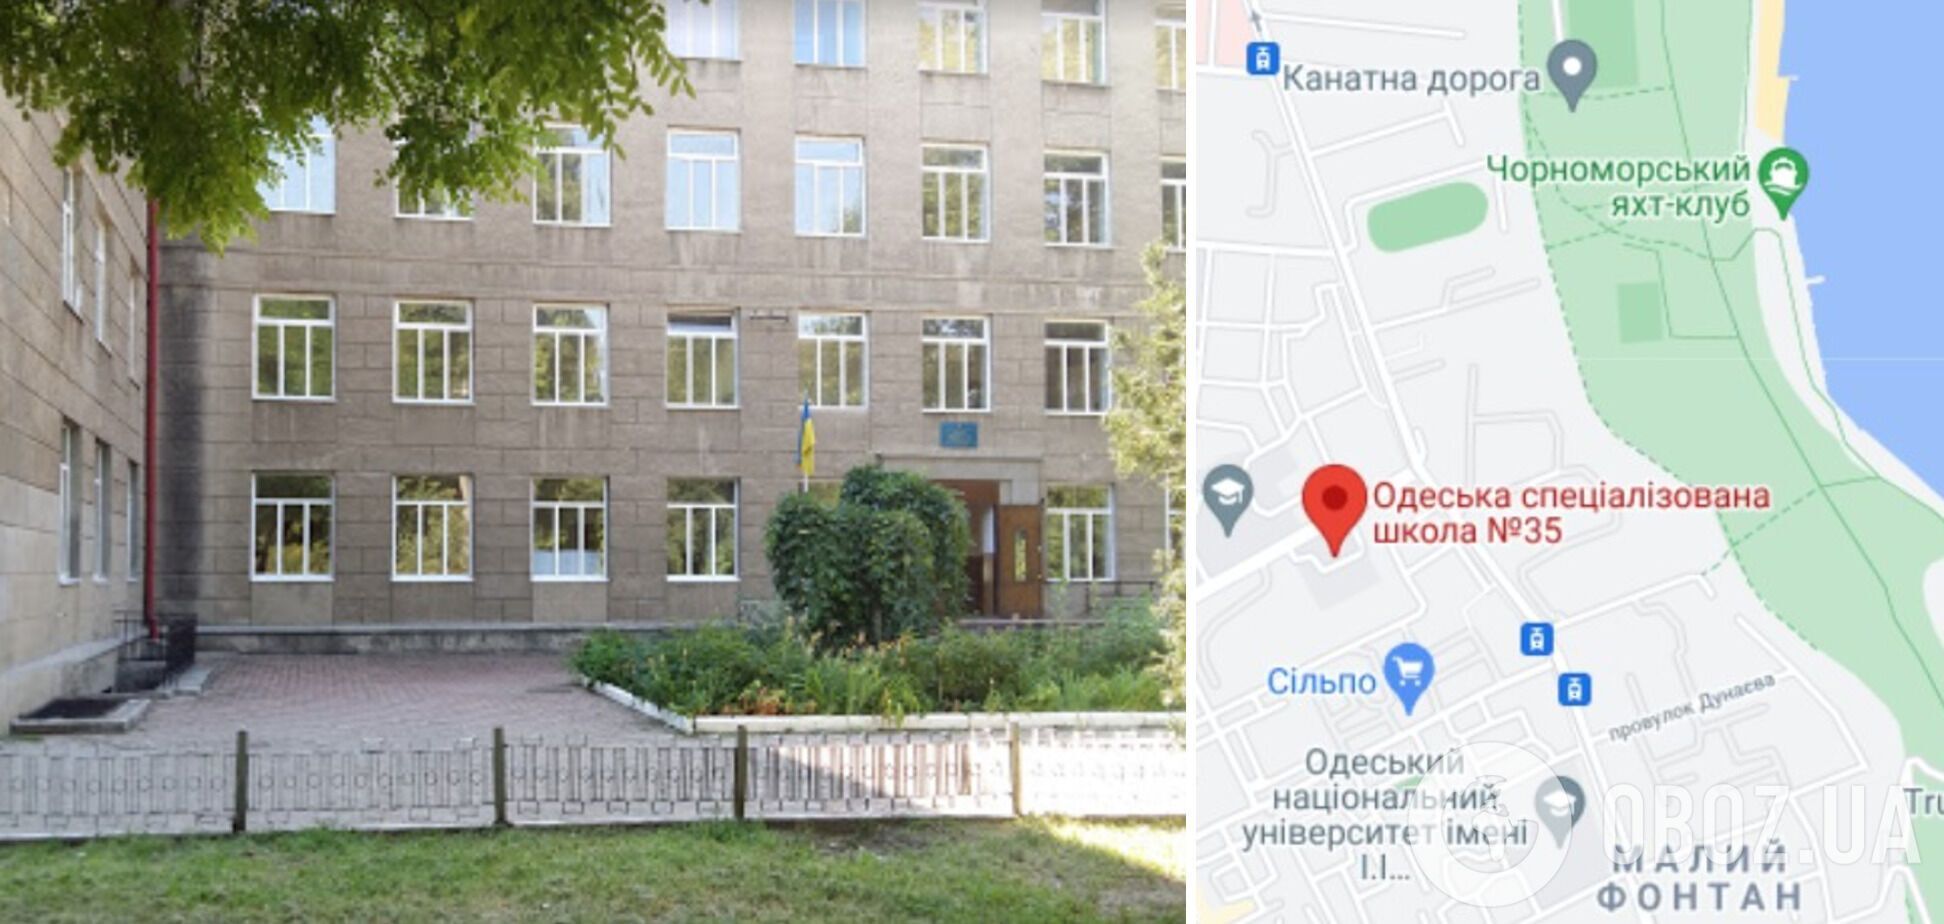 Инцидент произошел в Одесской специализированной школе №35